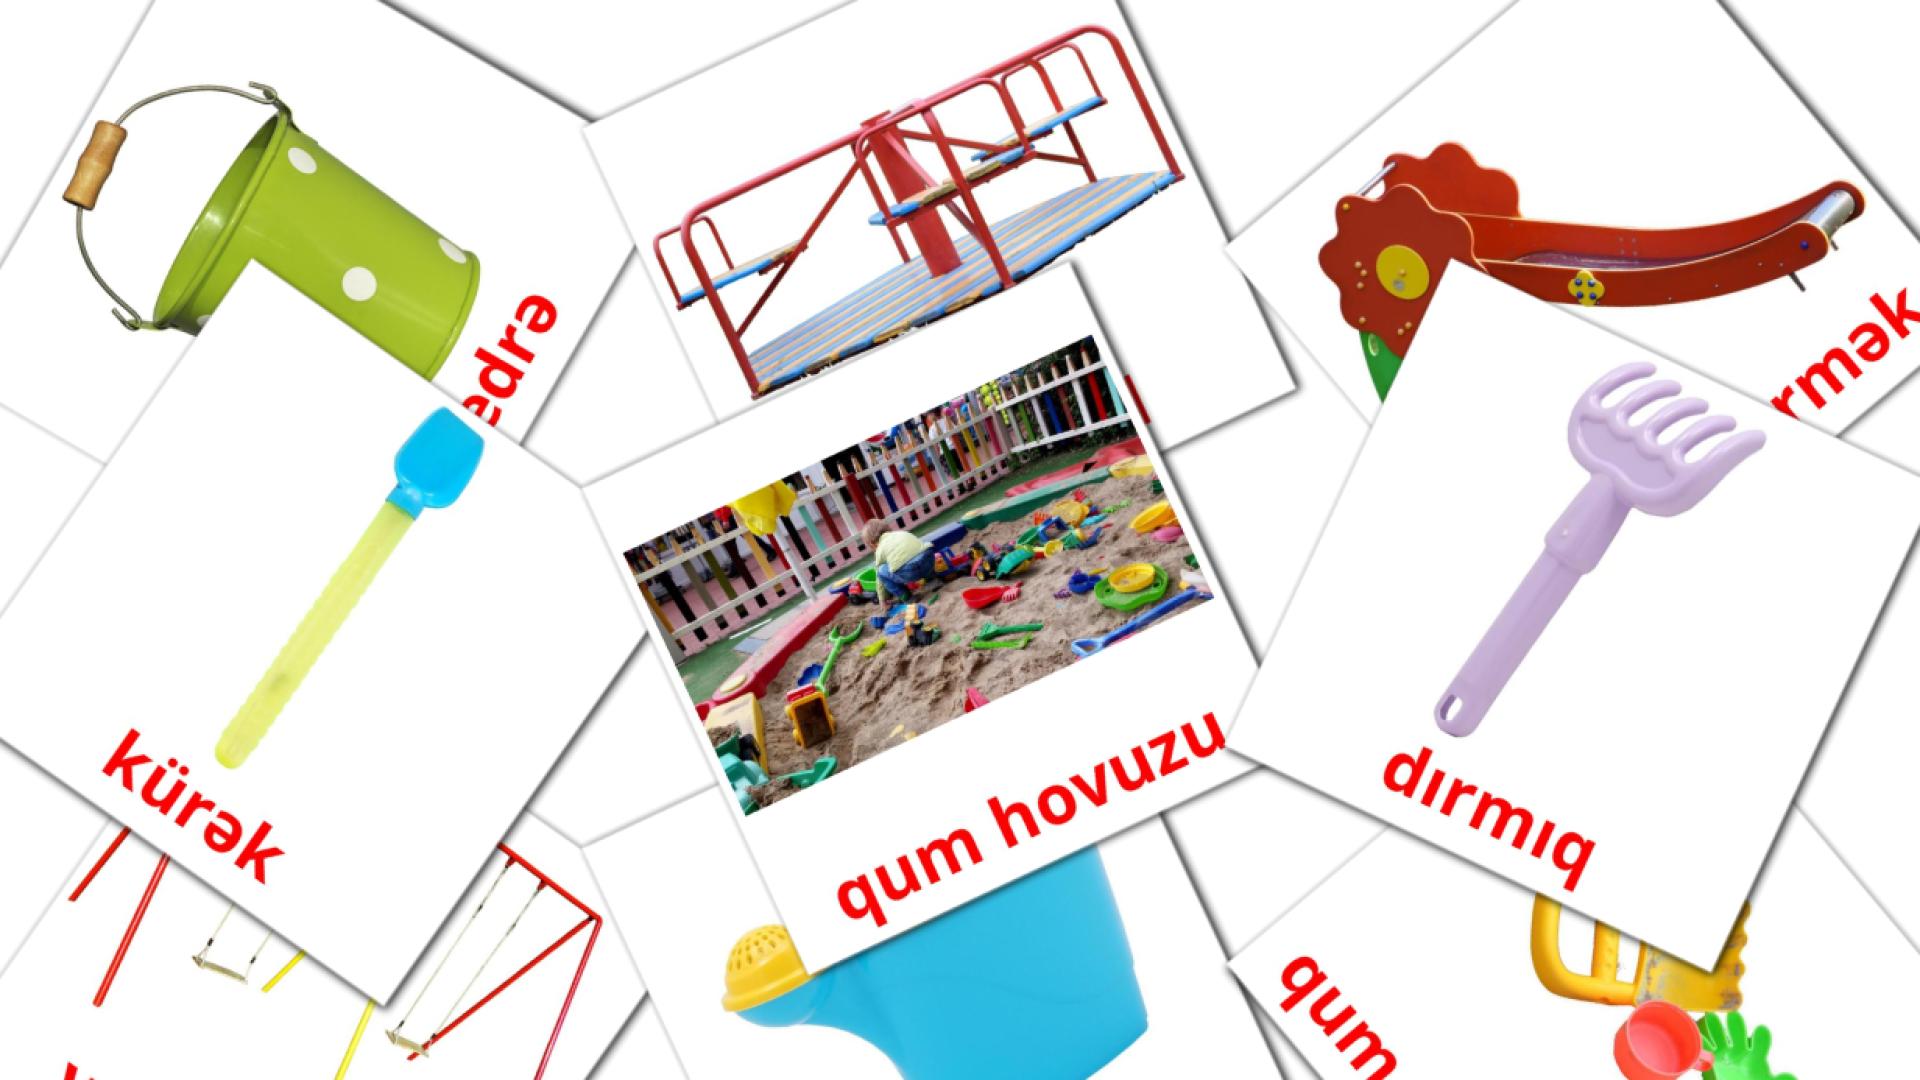 Playground - azerbaijani vocabulary cards